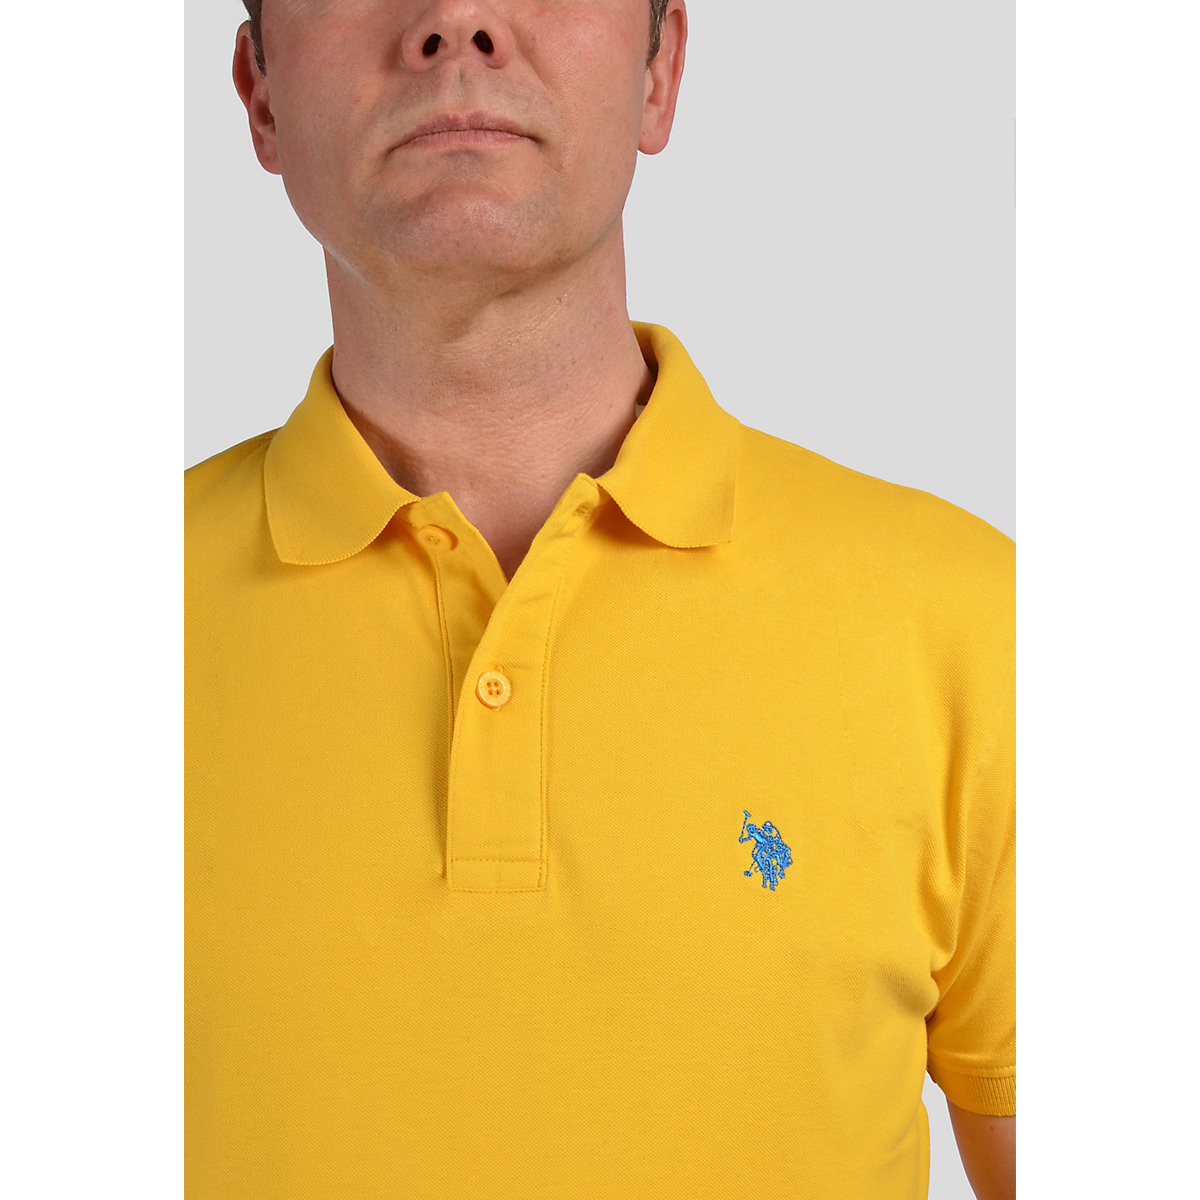 U.S. POLO ASSN. Polo Basic unifarben Kurzarmshirt mit Polokragen gelb